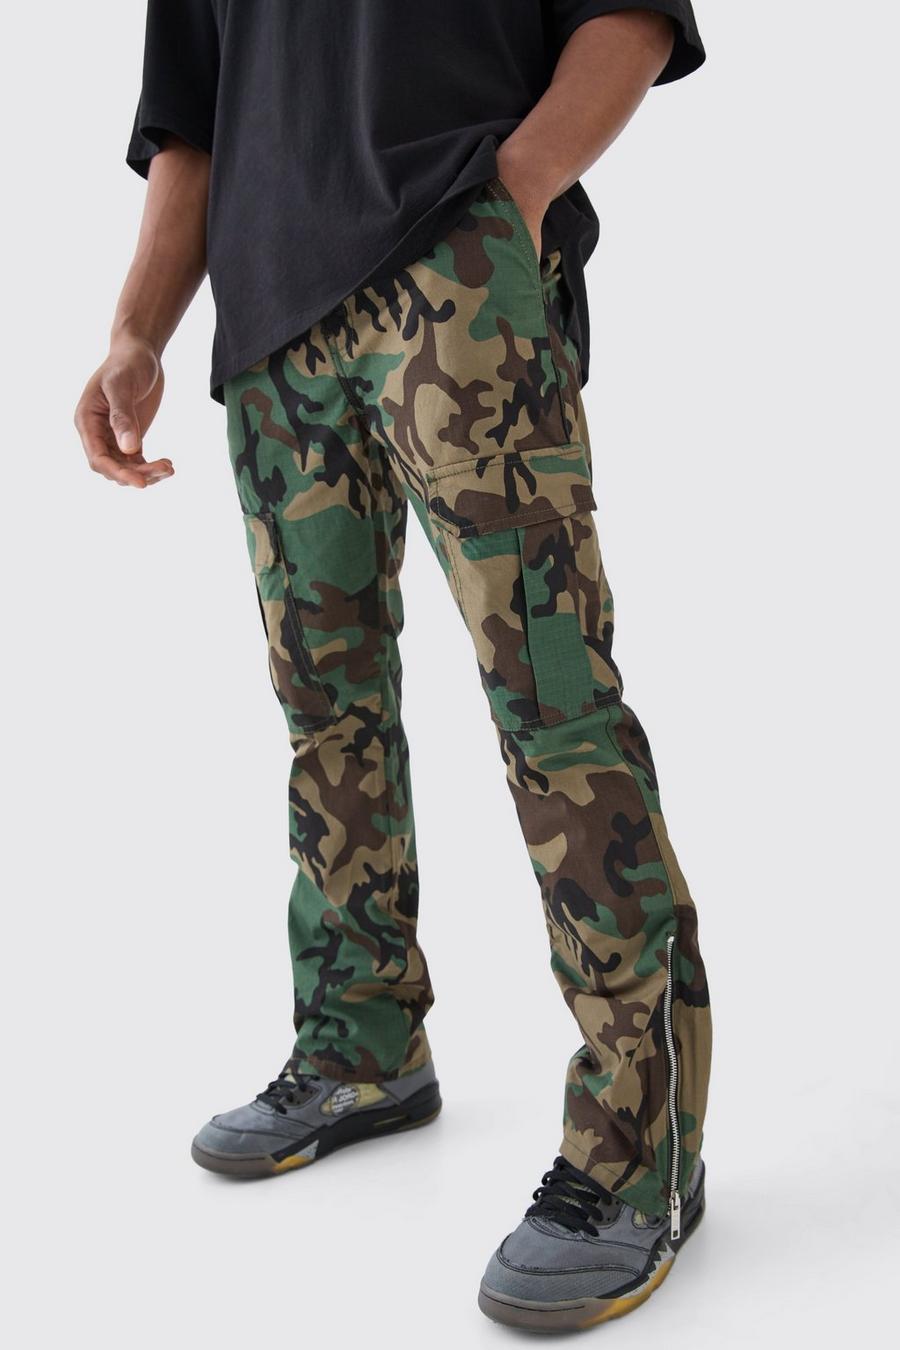 Pantaloni Cargo Slim Fit a zampa in nylon ripstop in fantasia militare con inserti e zip, Khaki